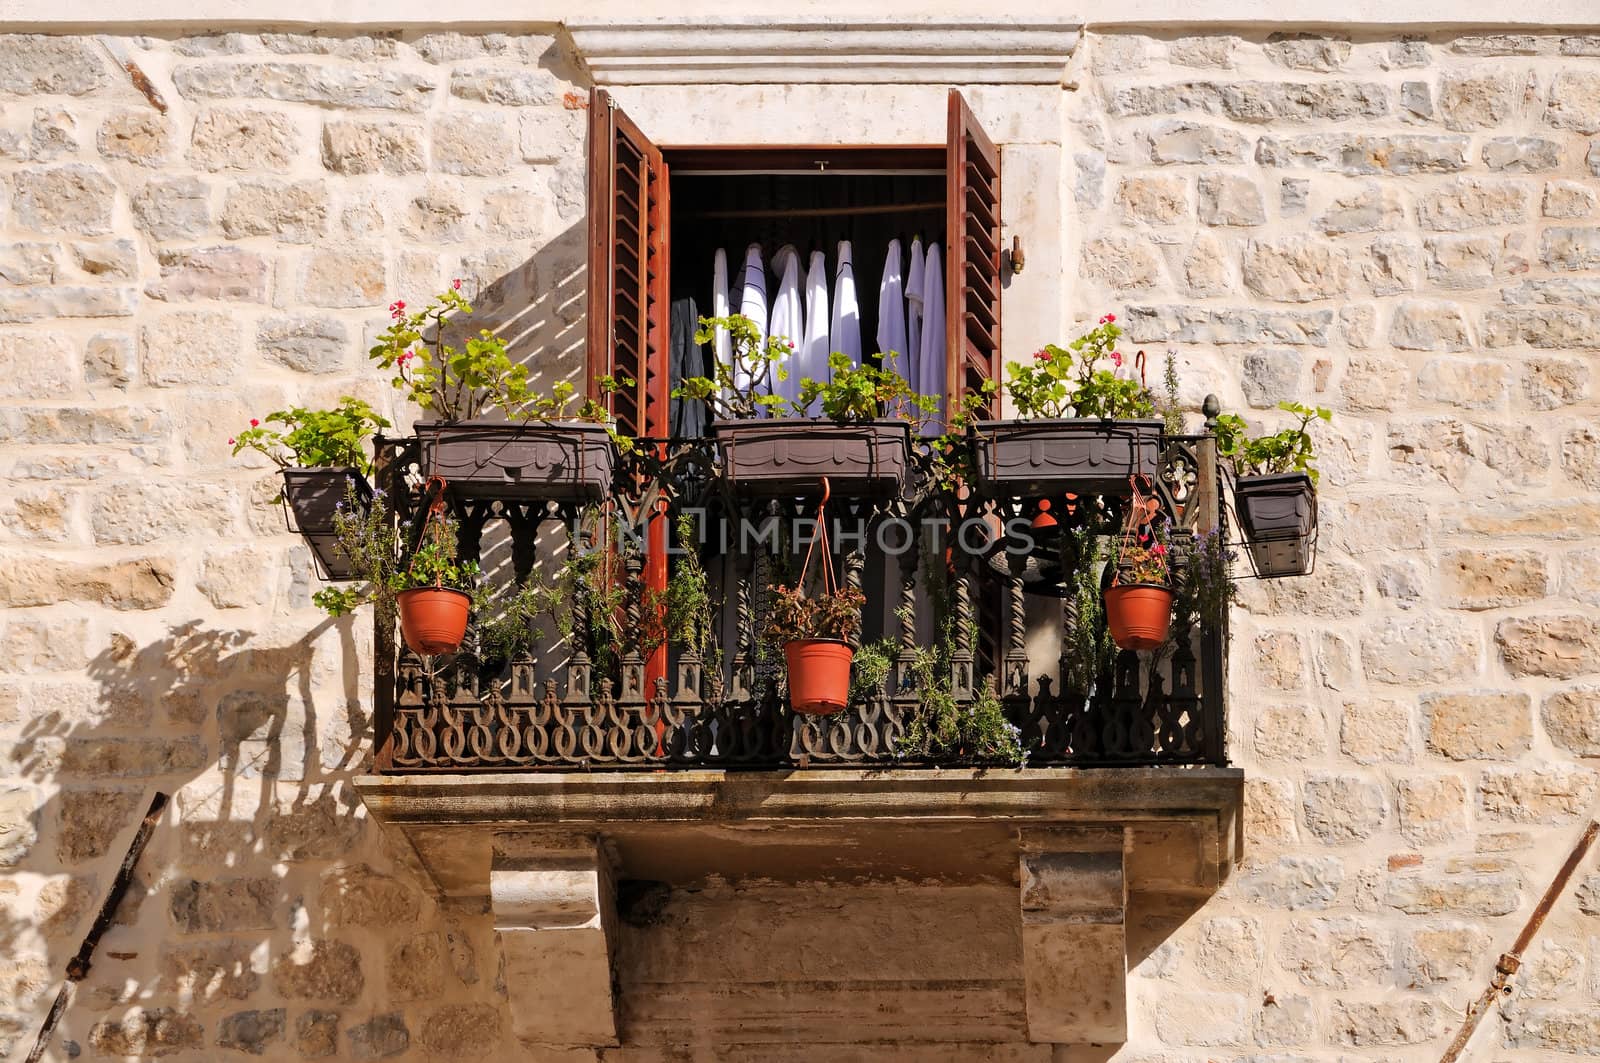 Old balcony in roman stile